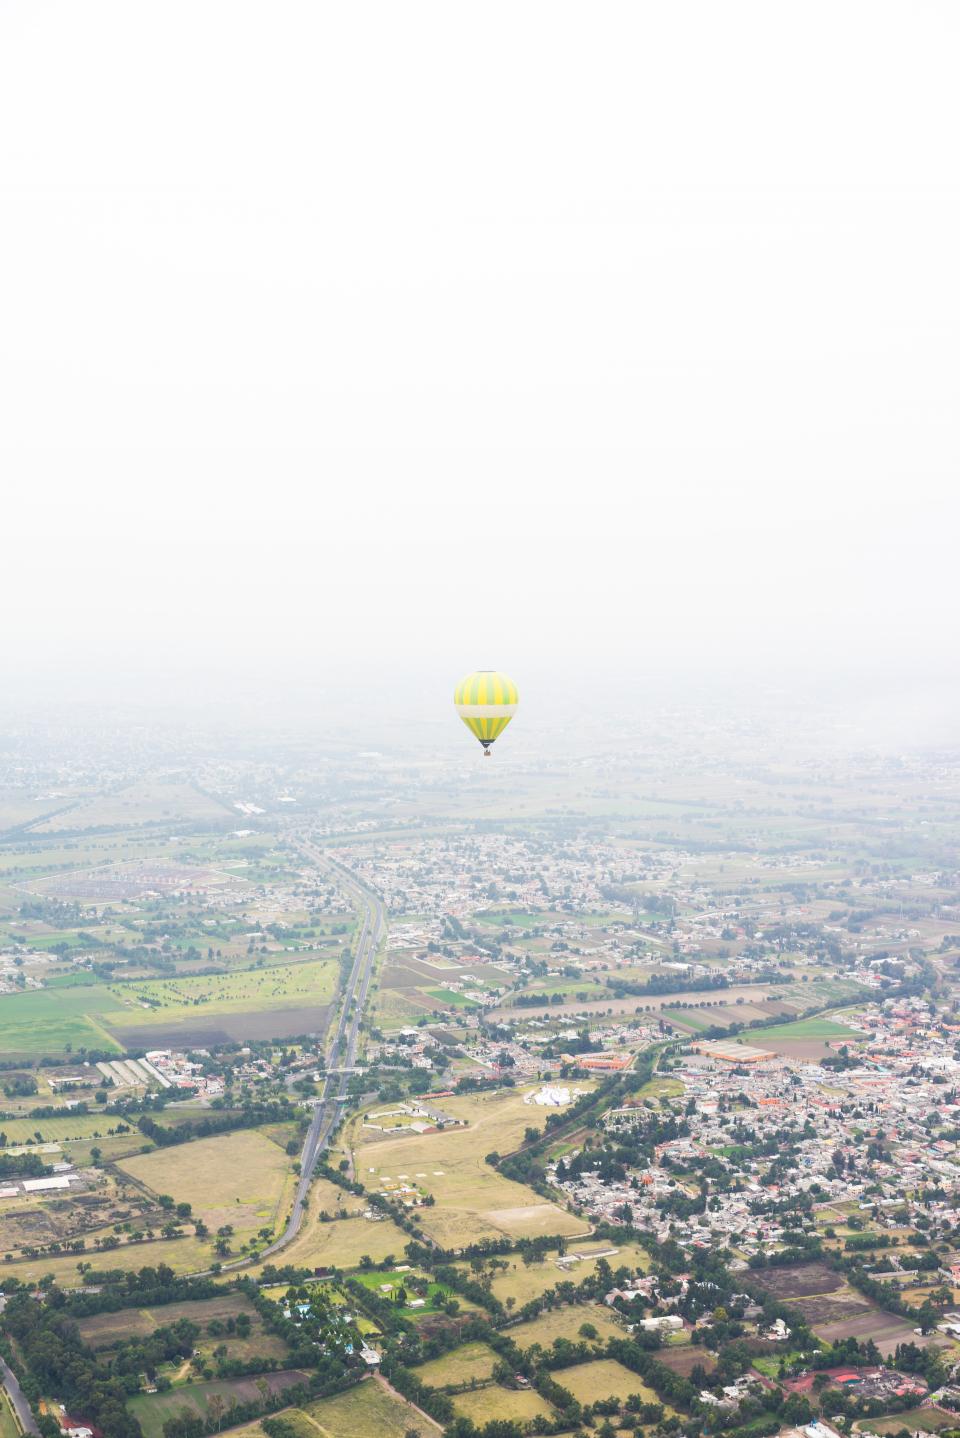 Balloon Land